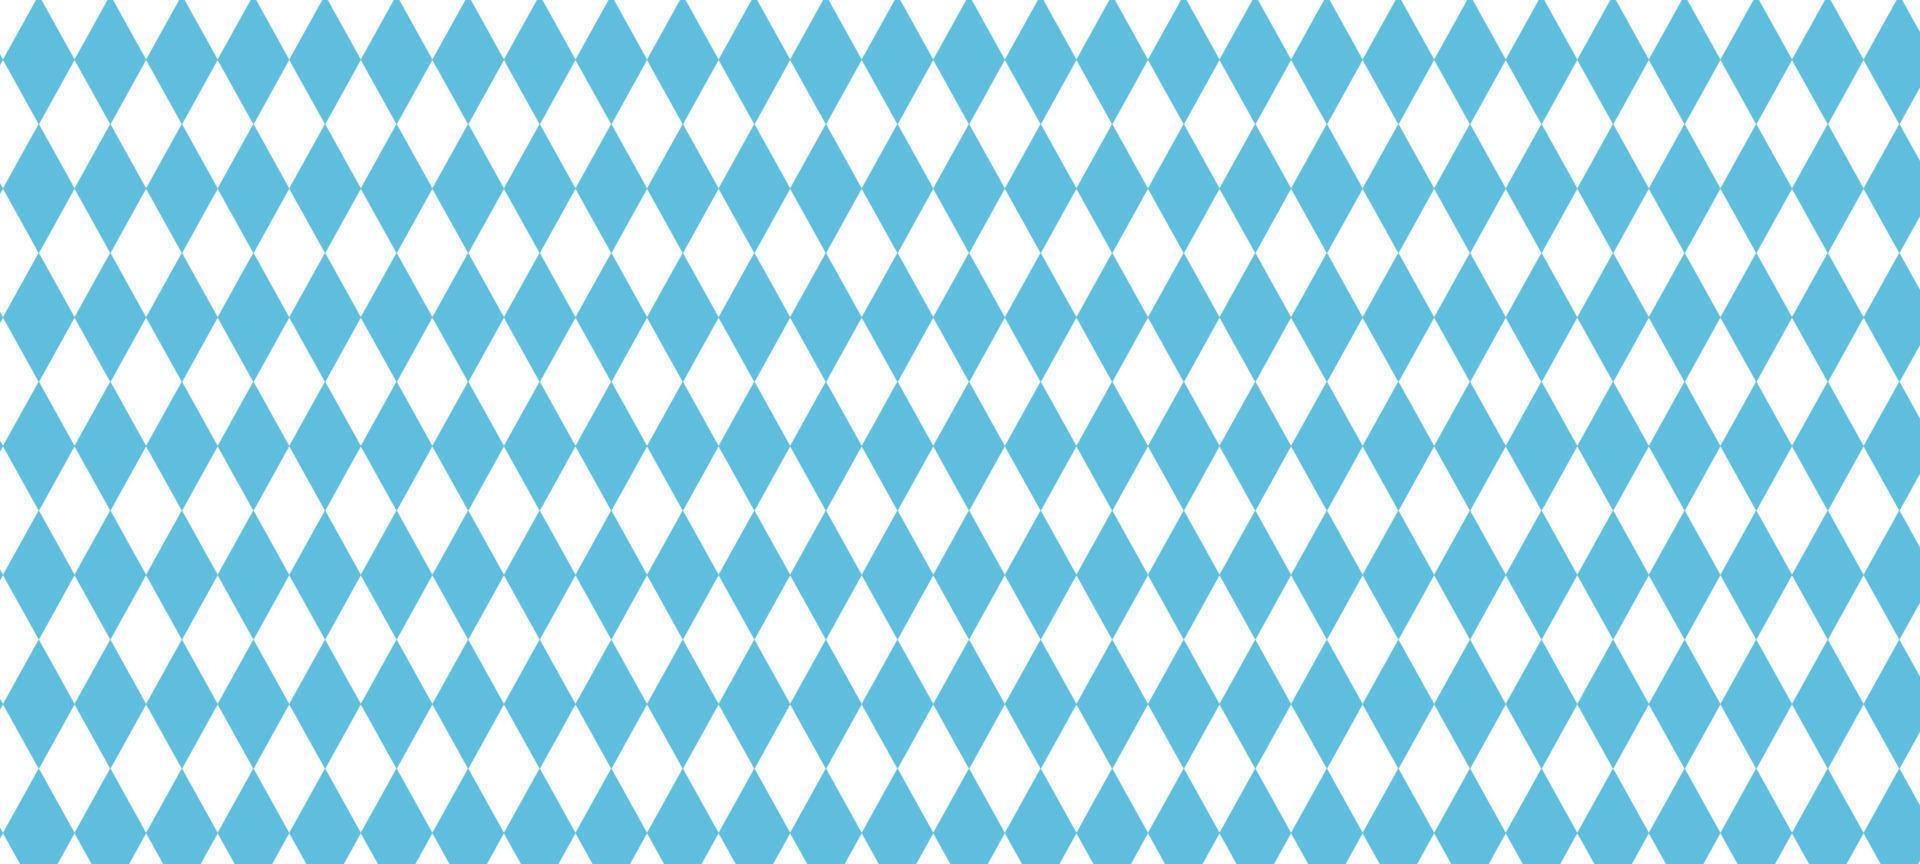 Beiers patroon voor oktoberfeest. Duitse blauw ruit textuur. vector illustratie